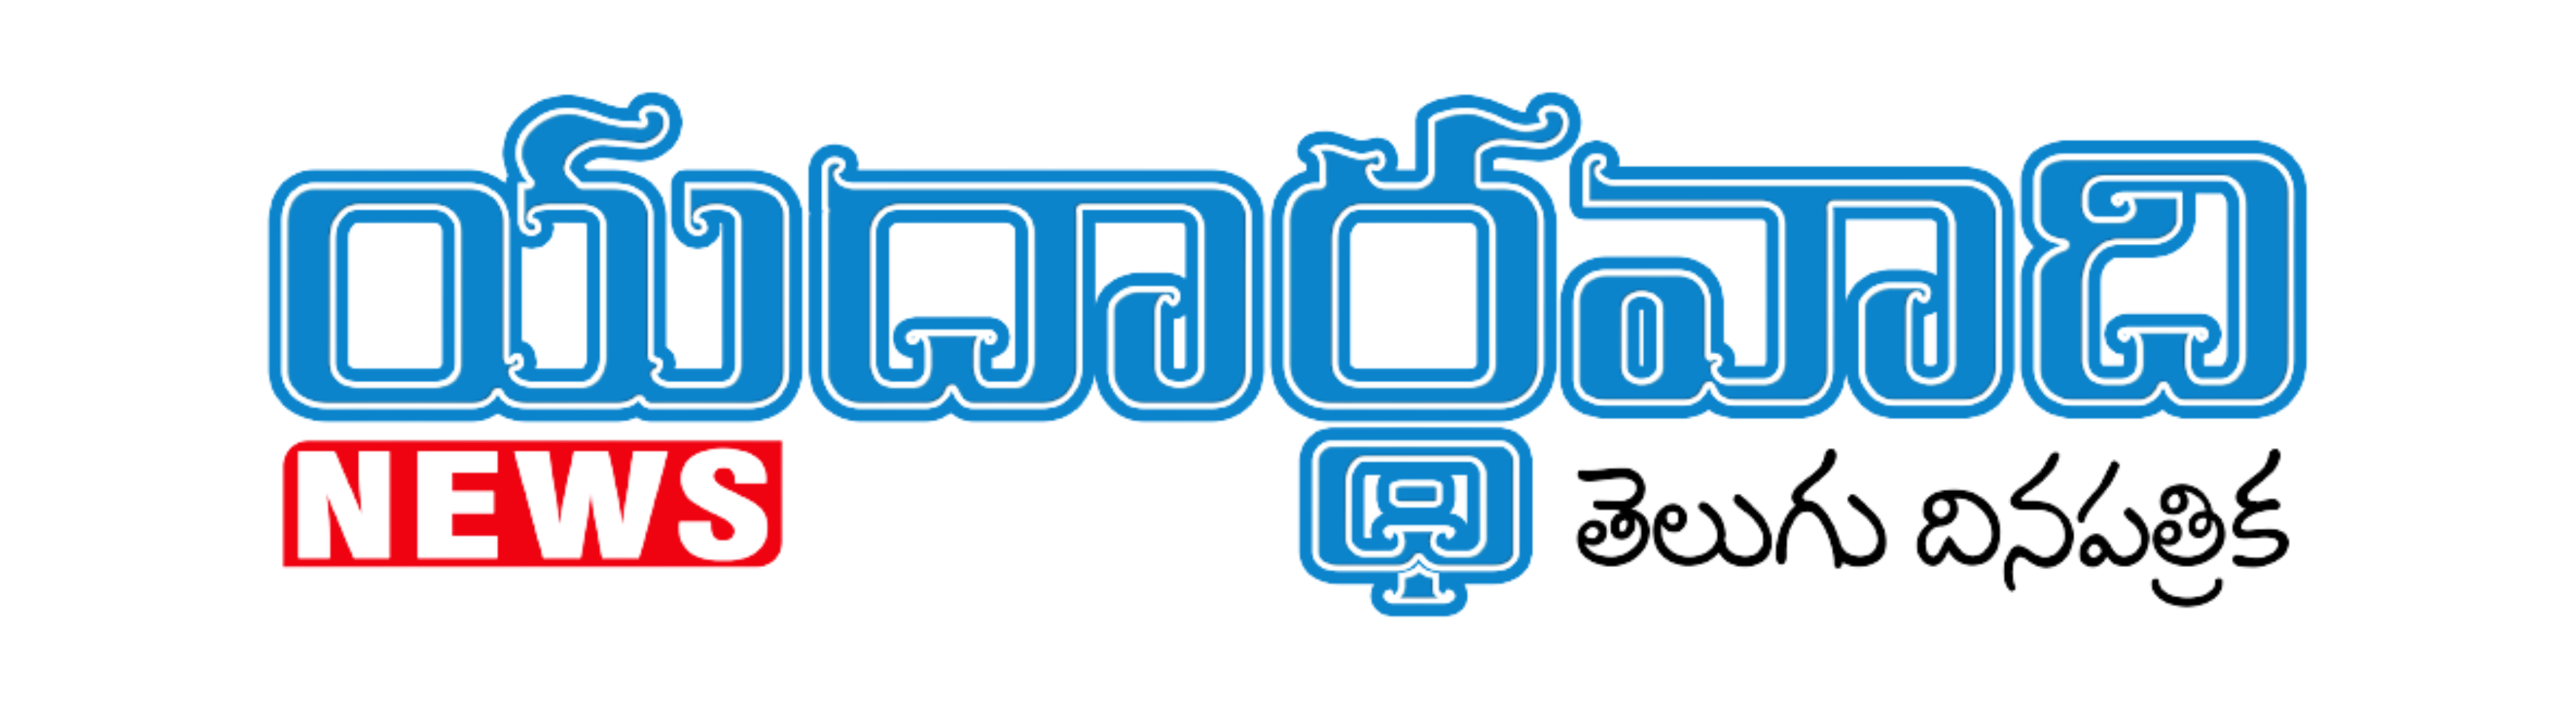 yaadharthavaadhi-news-logo